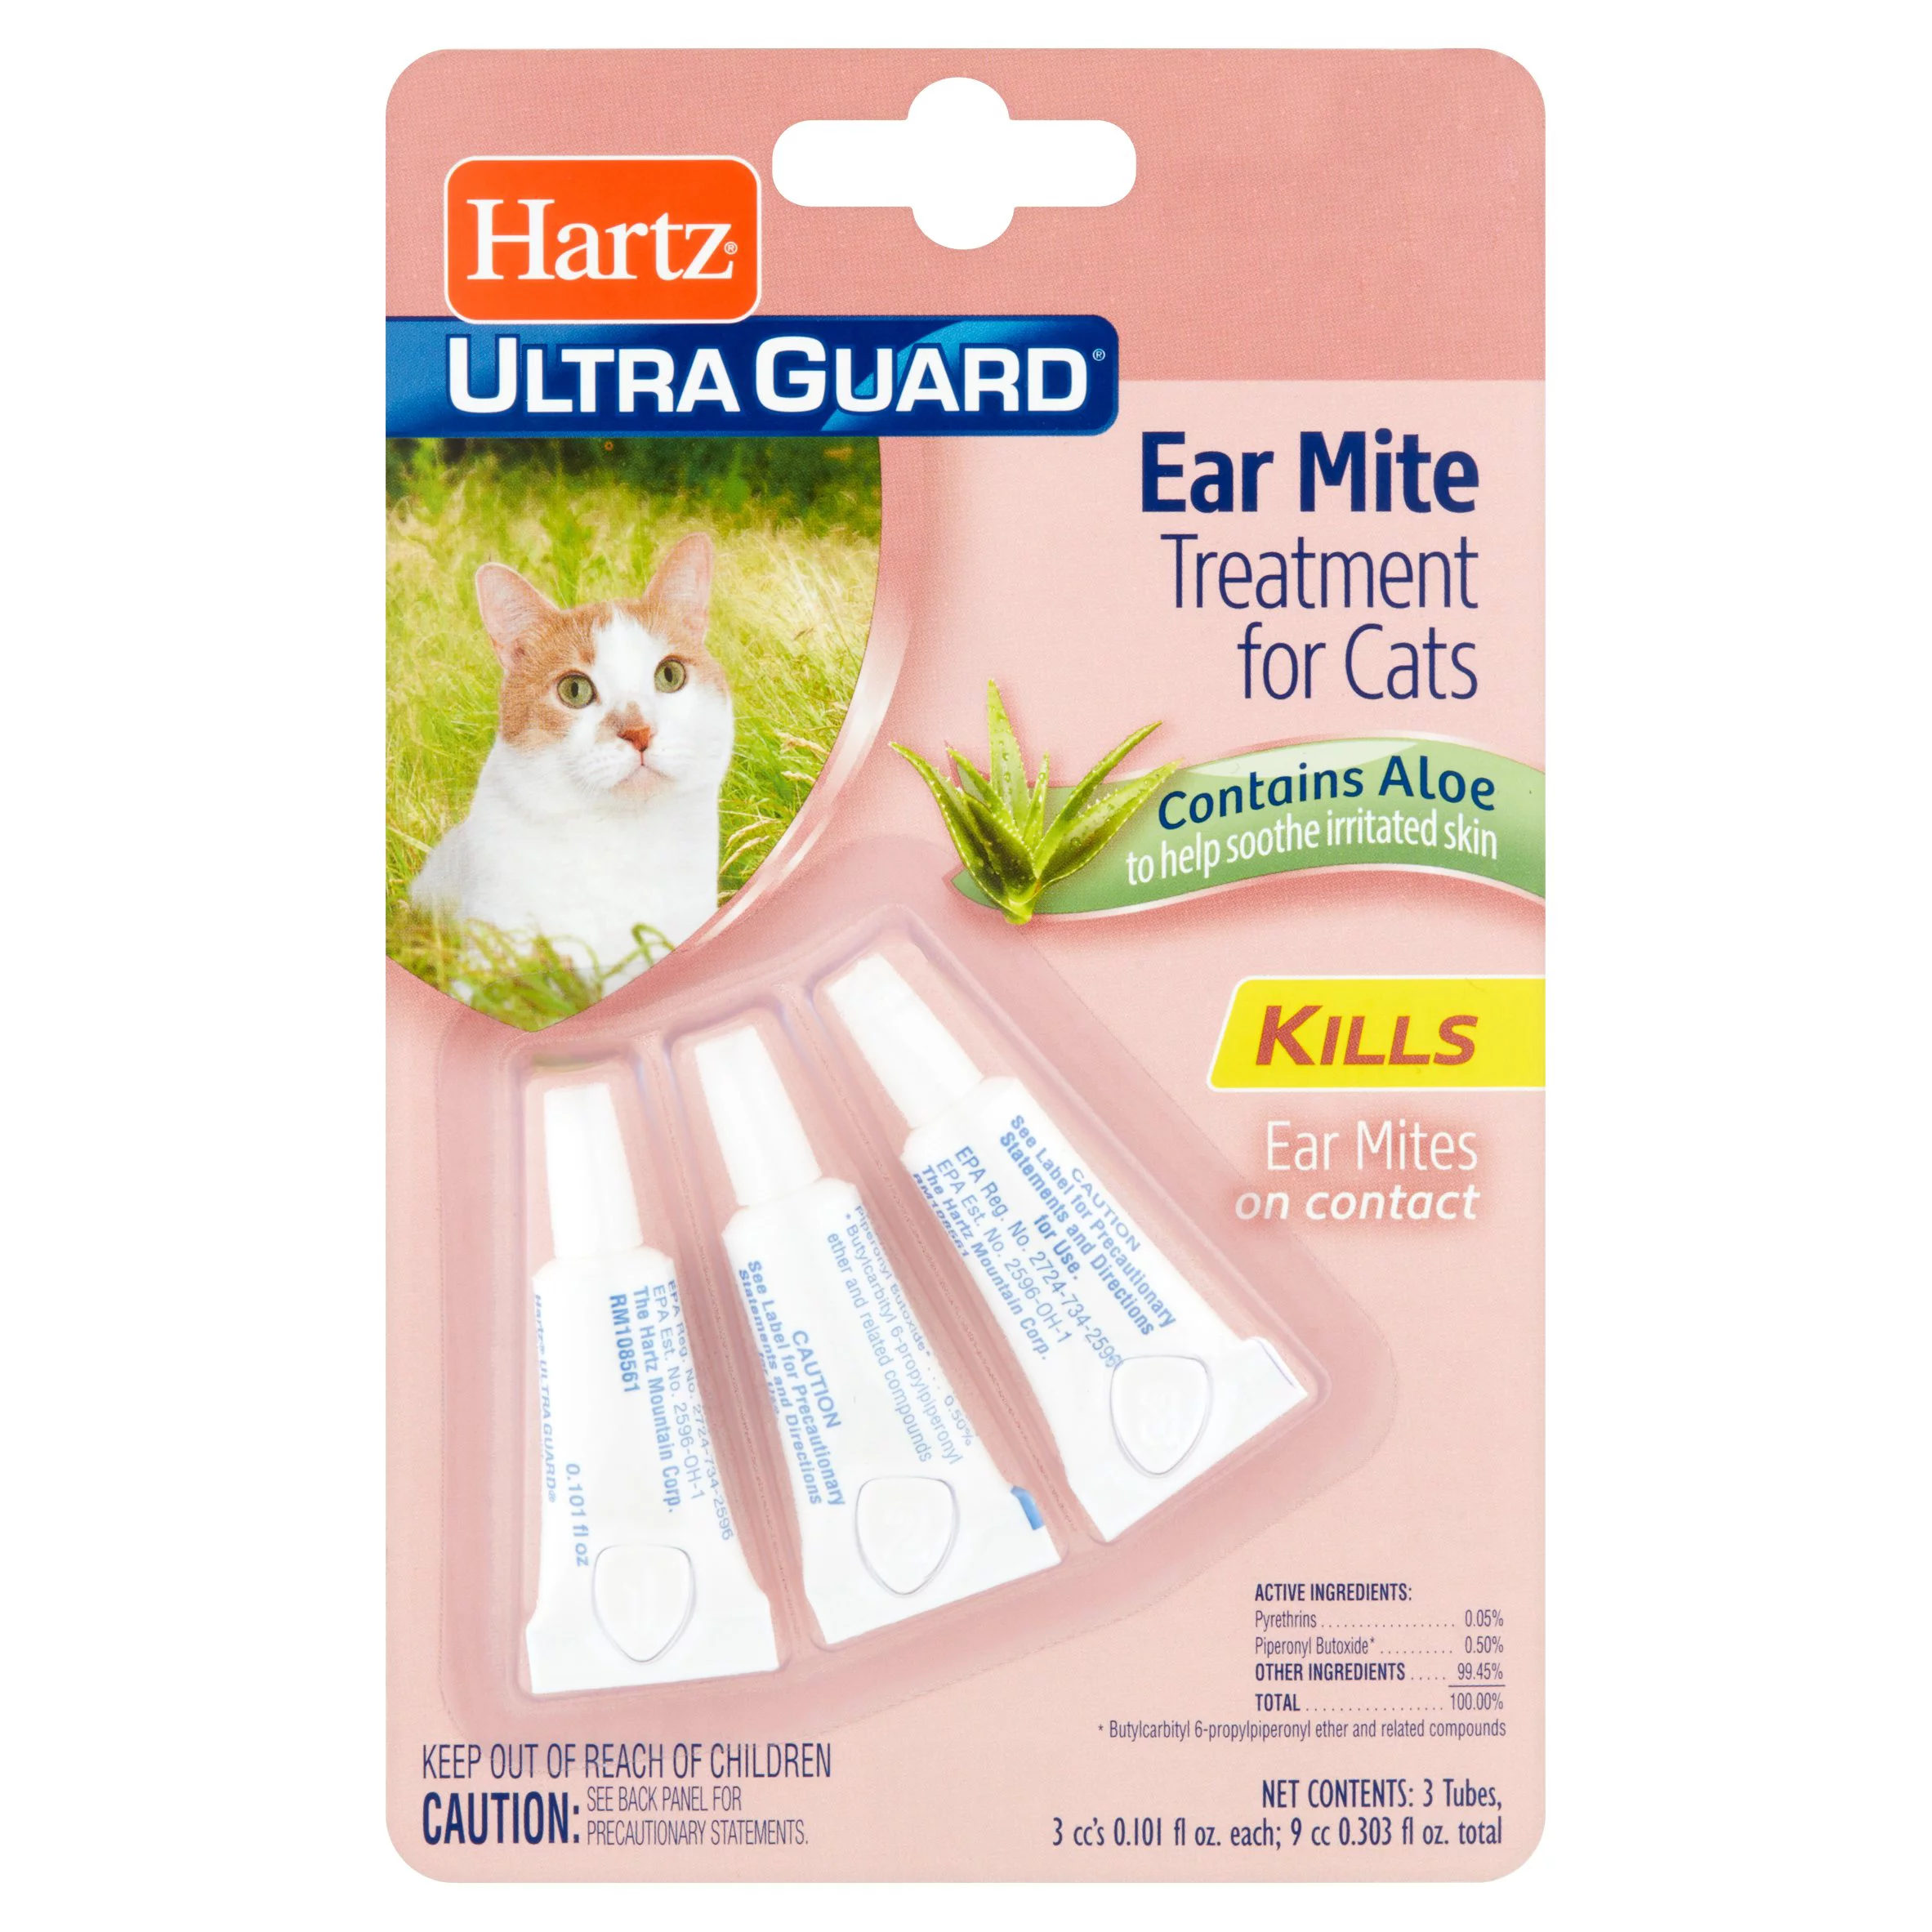 Hartz UltraGuard Ear Mite Treatment for Cats, 0.101 fl oz